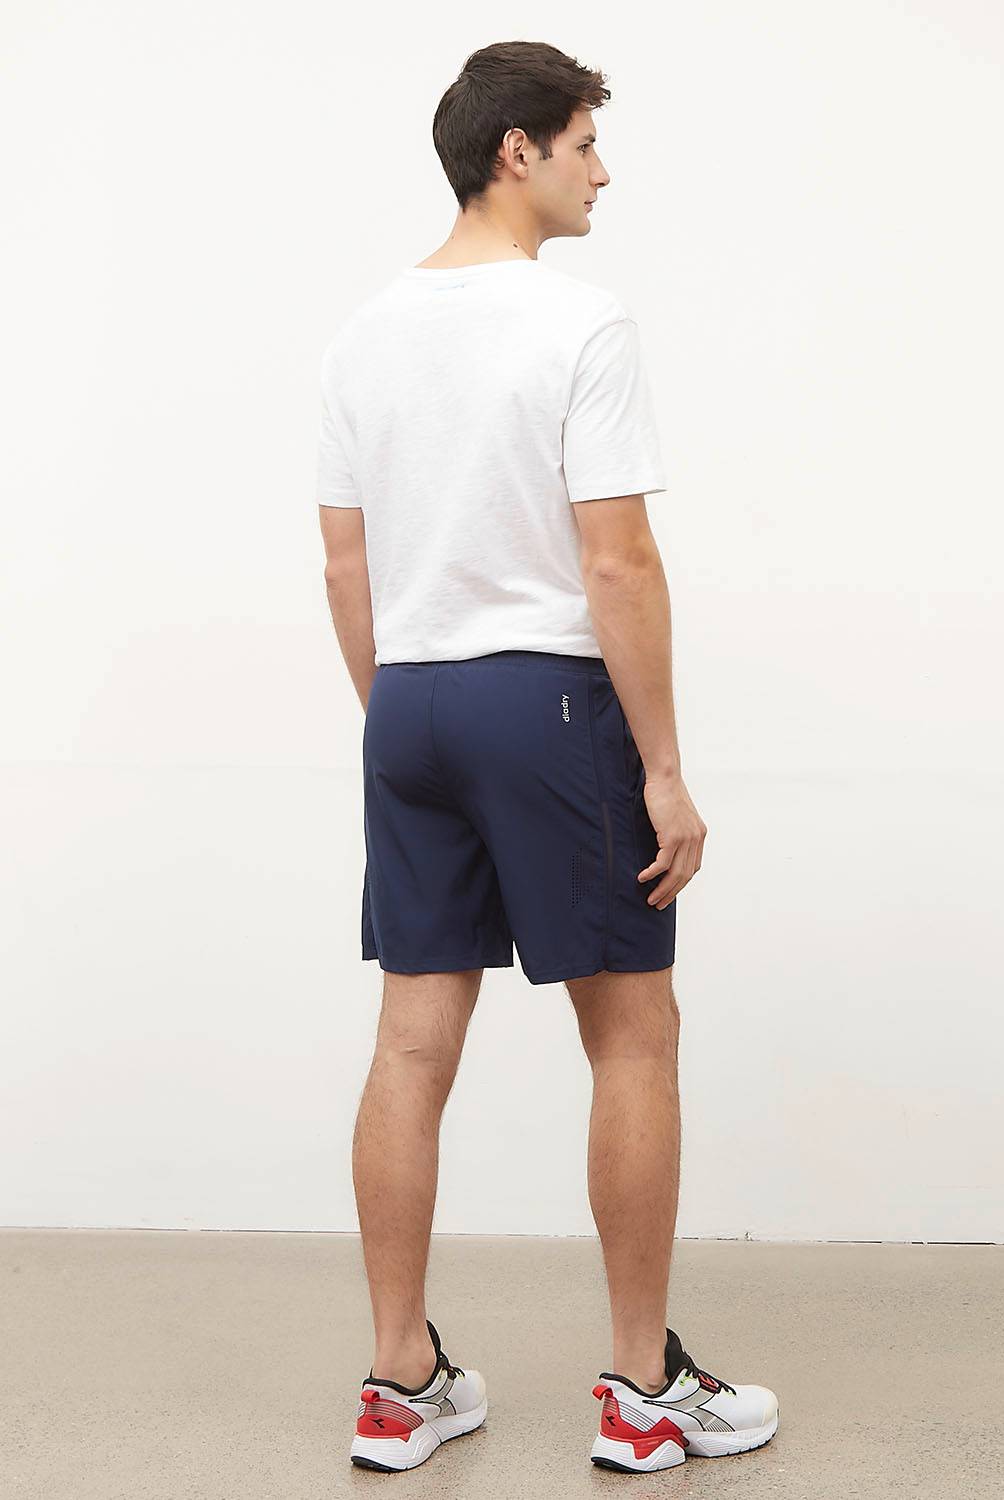 Pantalones cortos deportivos para Hombre - Diadora Tienda Online